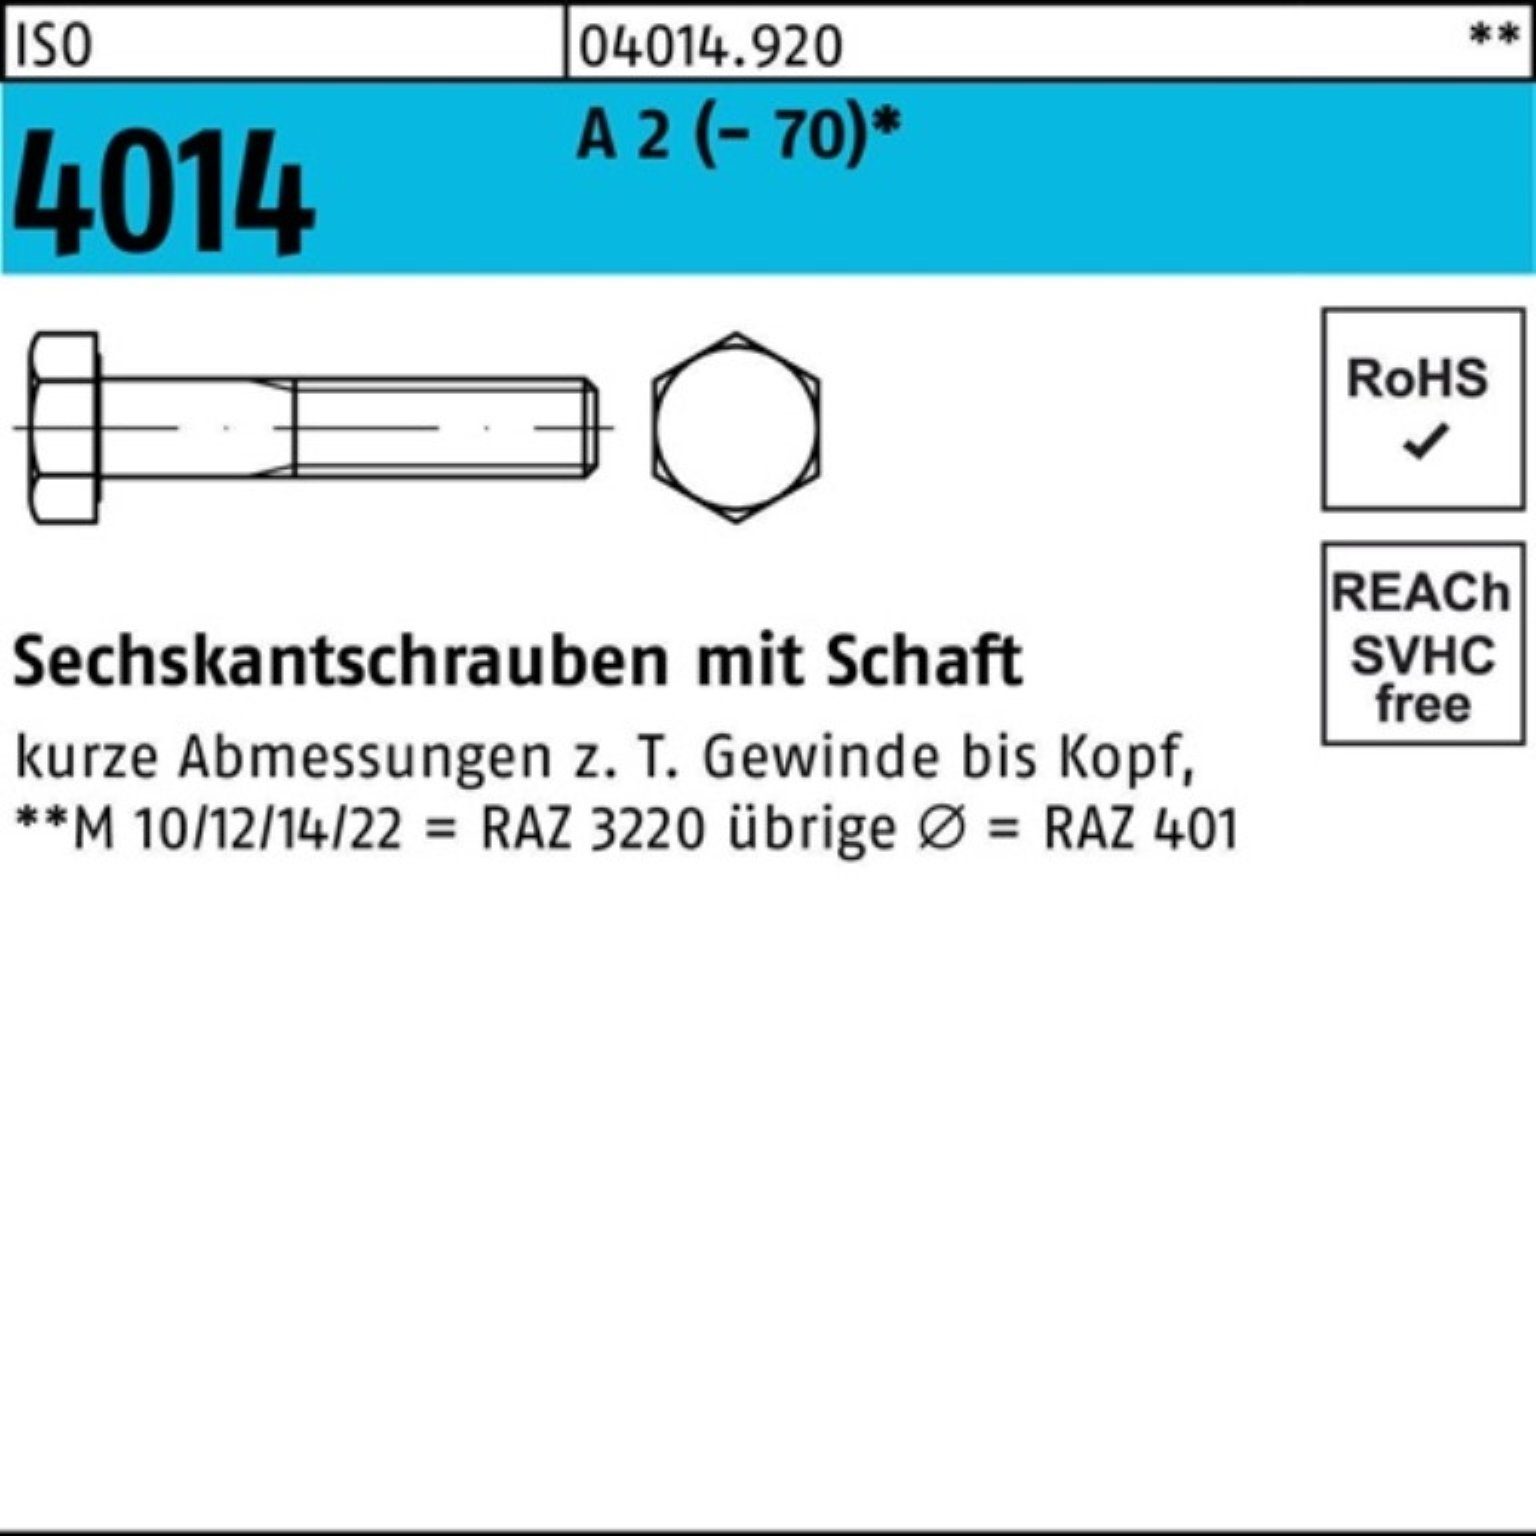 ISO Bufab 210 M33x Sechskantschraube Stück Sechskantschraube 2 4014 Pack A 1 100er Schaft ISO